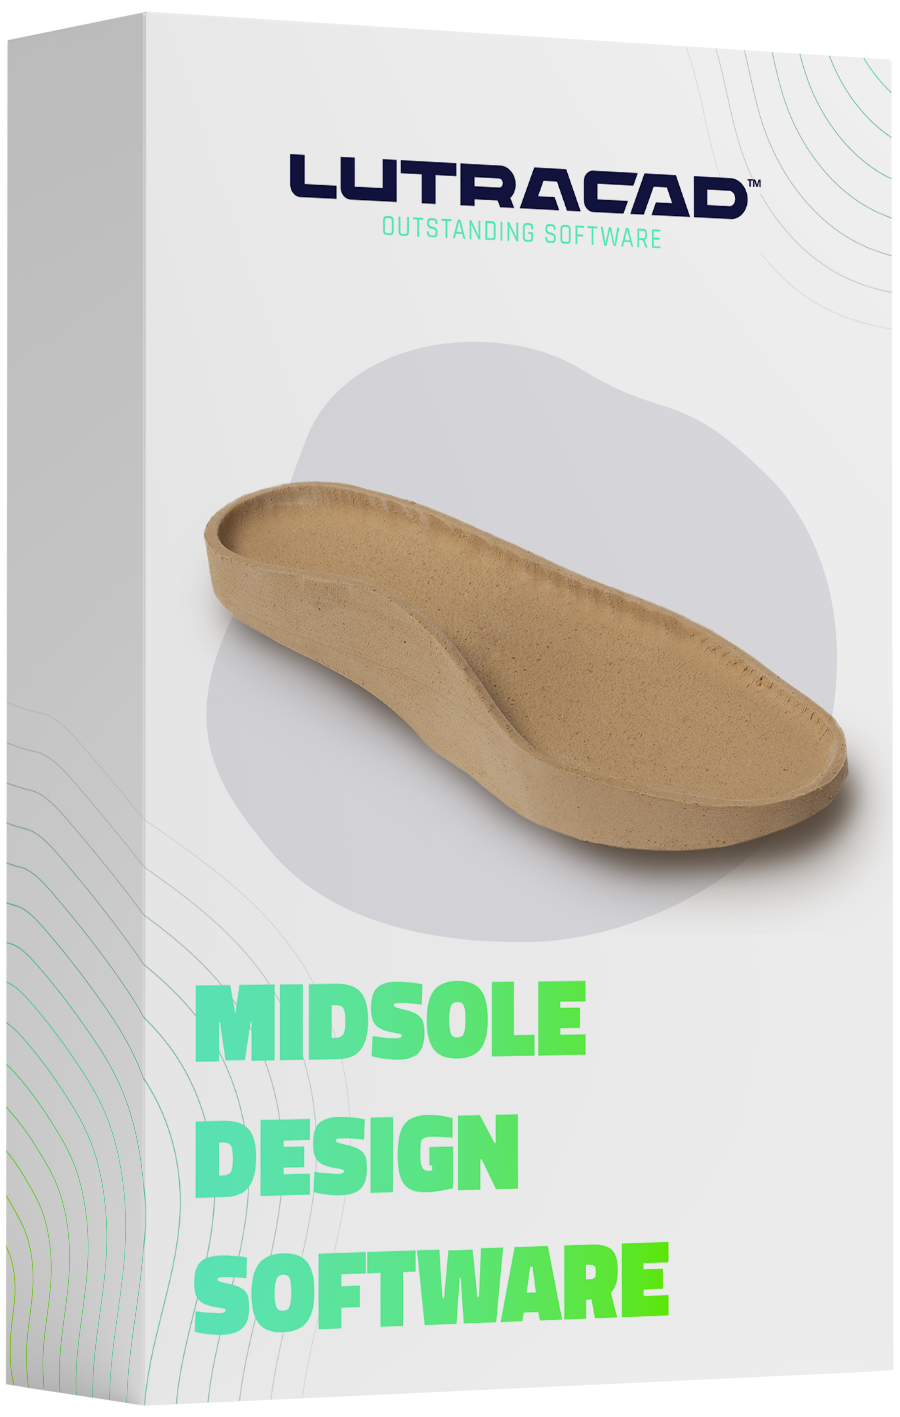 Midsole design software